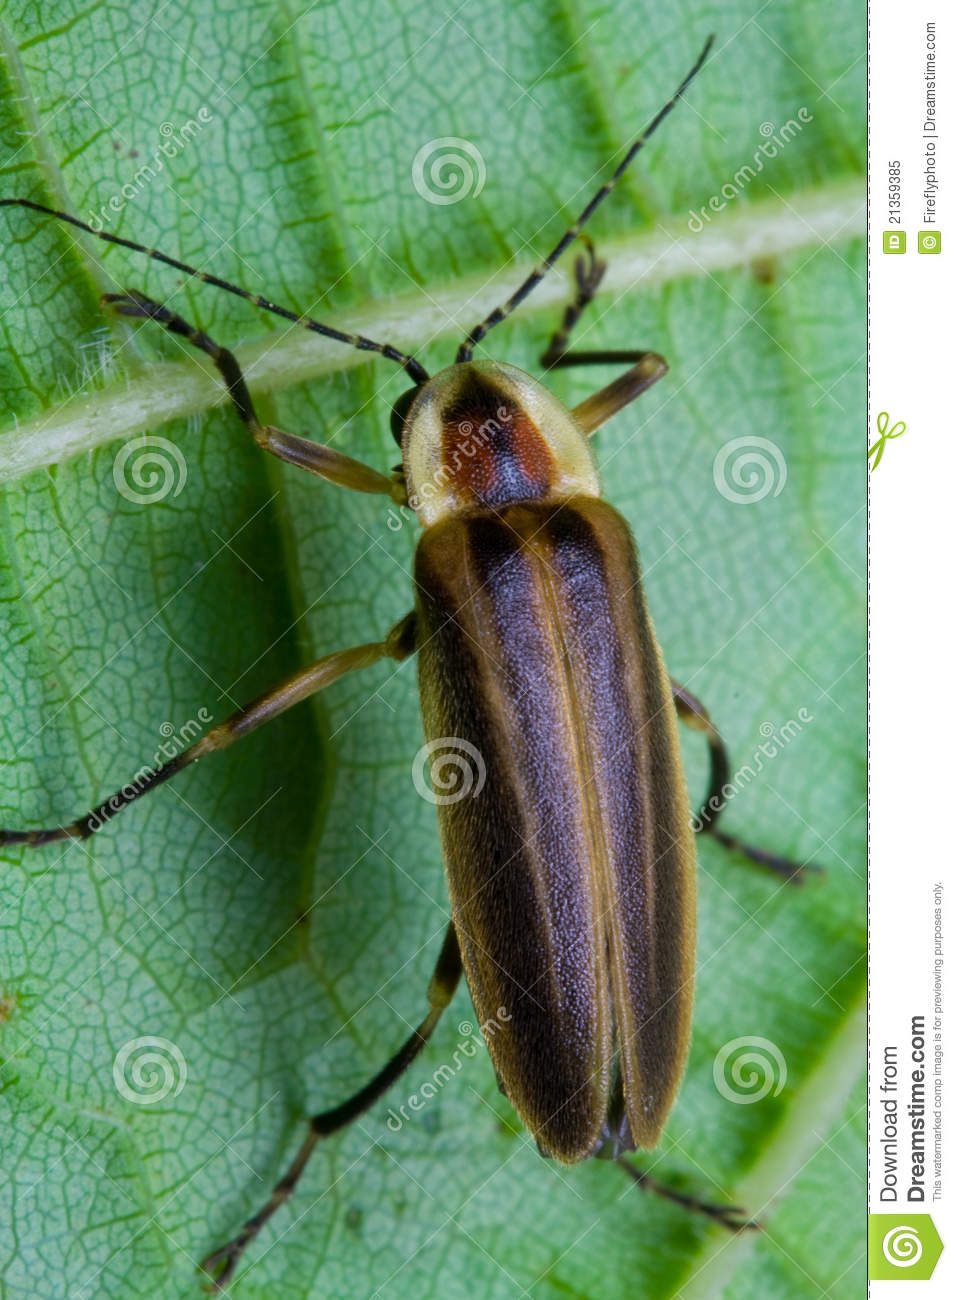 Firefly   Lightning Bug On Leaf Royalty Free Stock Photo   Image    